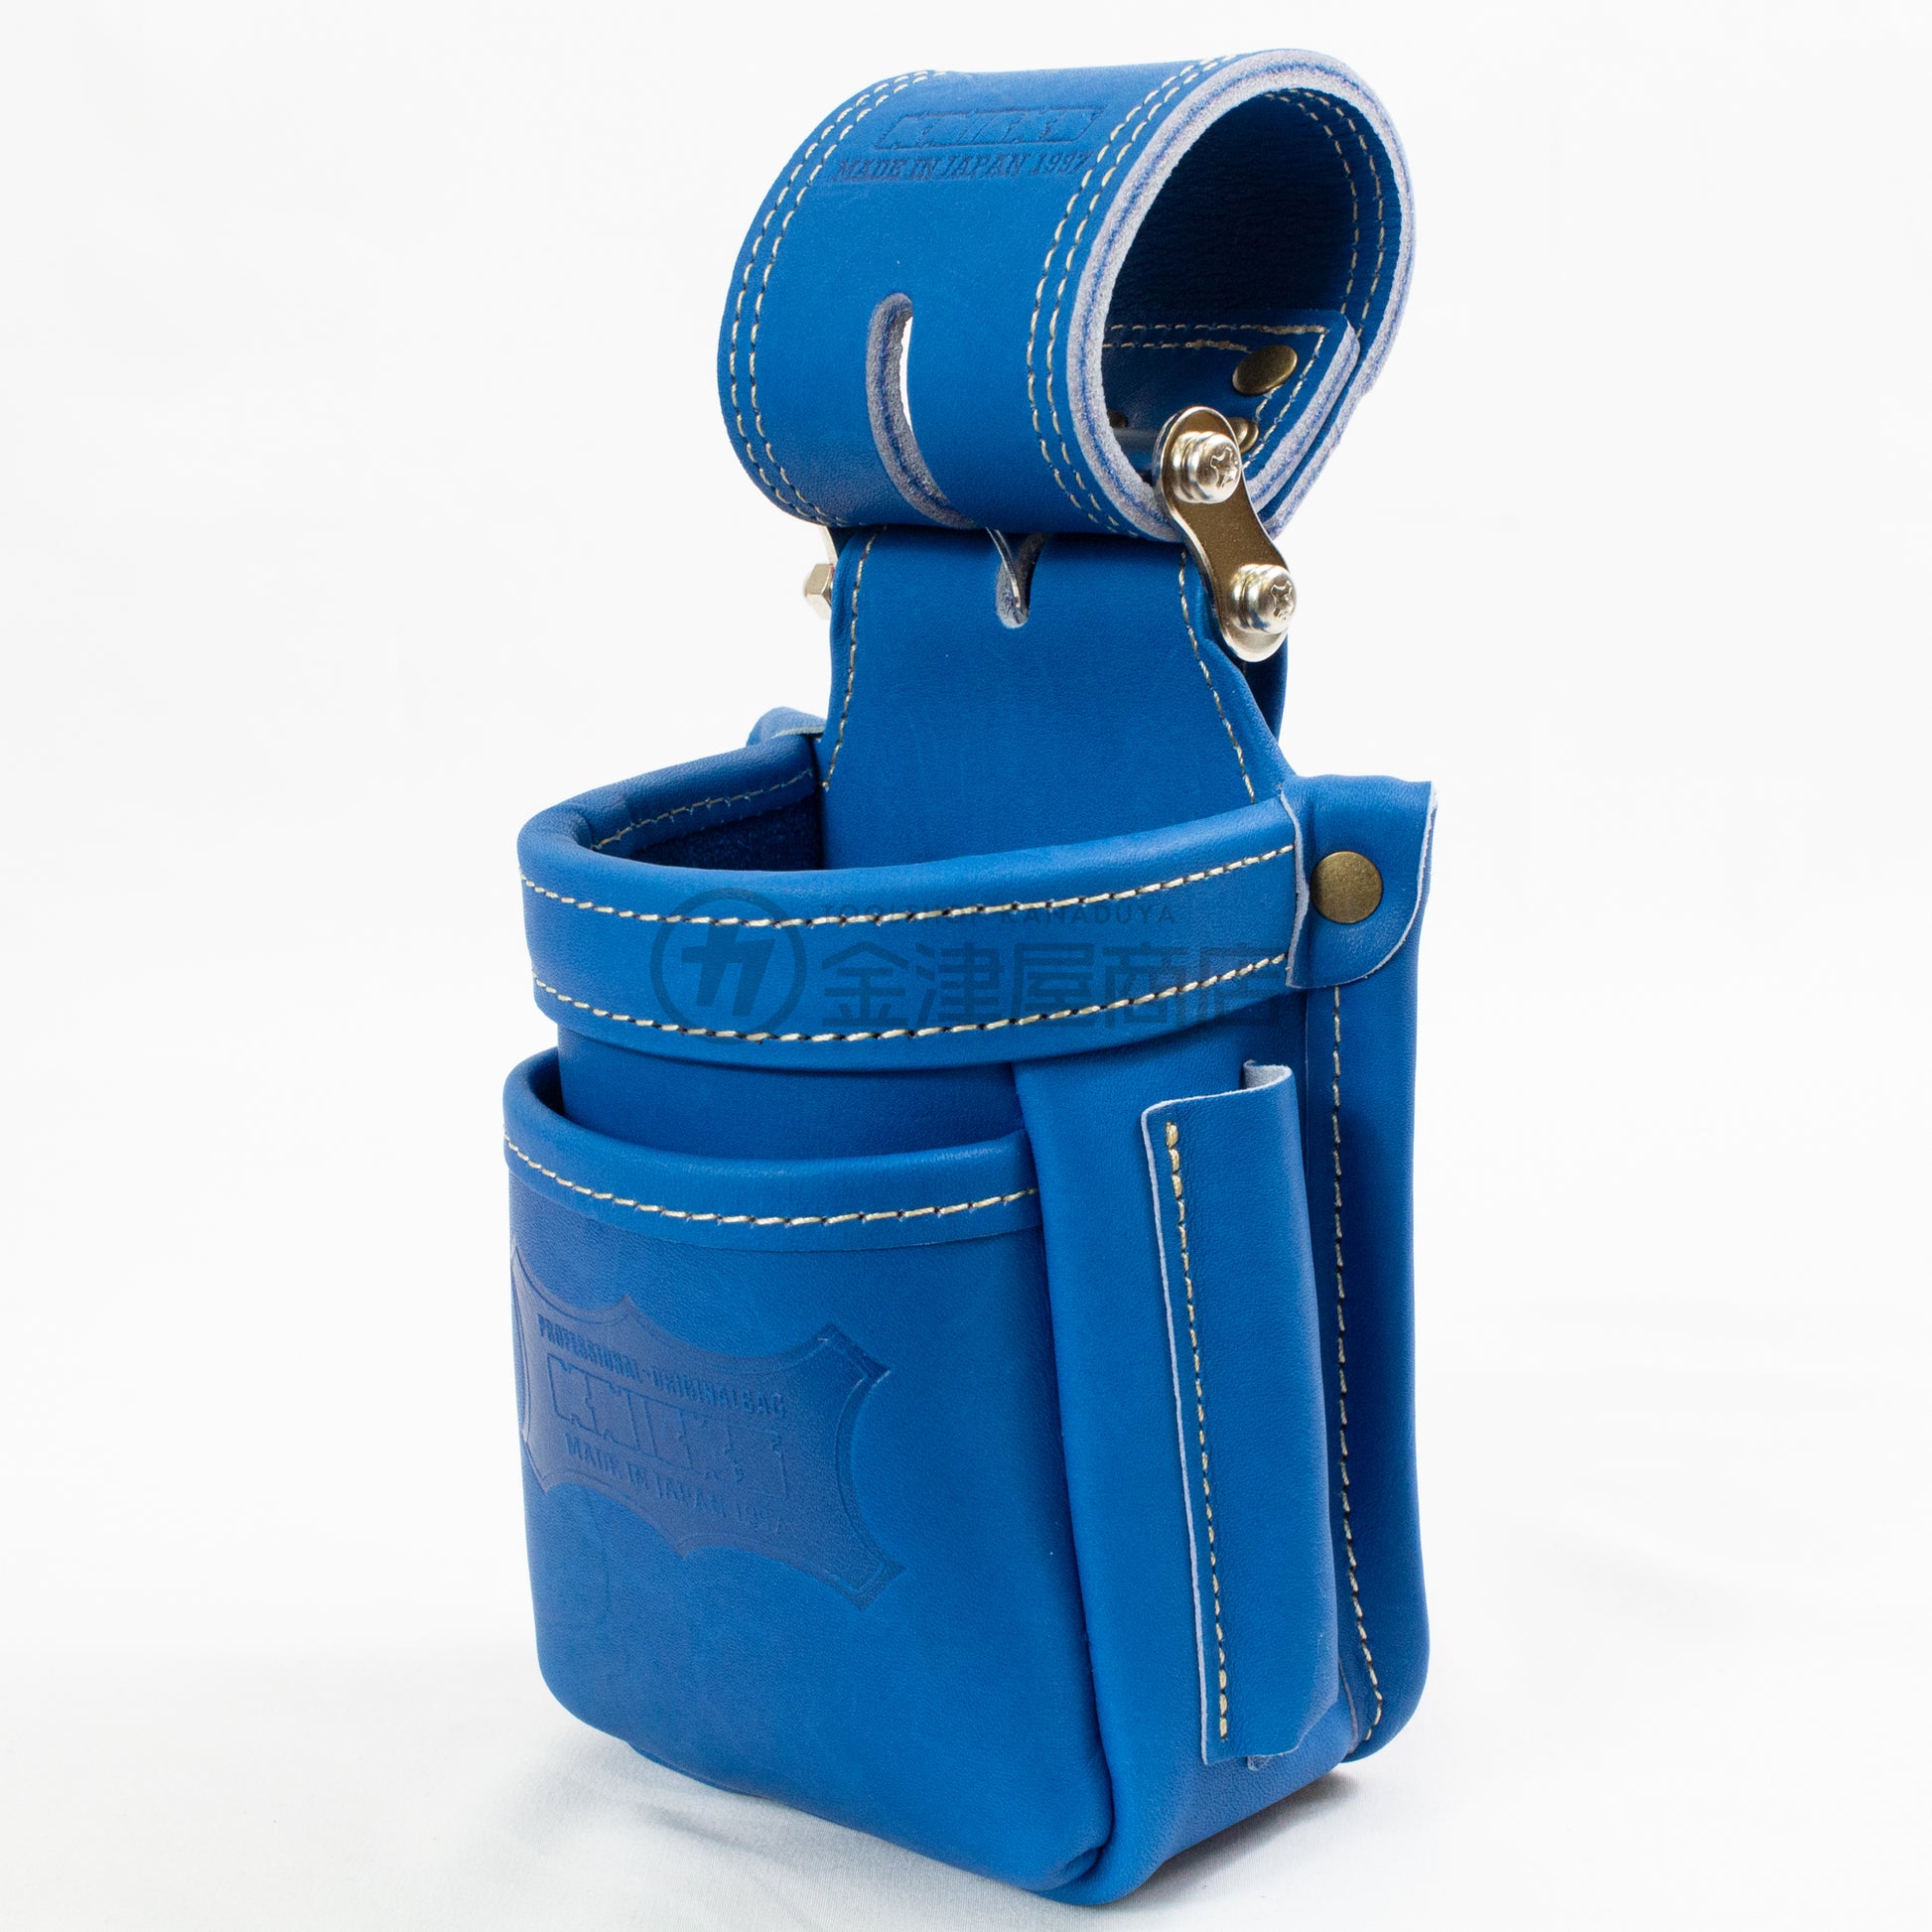 ニックス(KNICKS) 最高級硬式グローブ革小物腰袋 チェーンタイプ ブルー/レッド-腰袋-金津屋商店